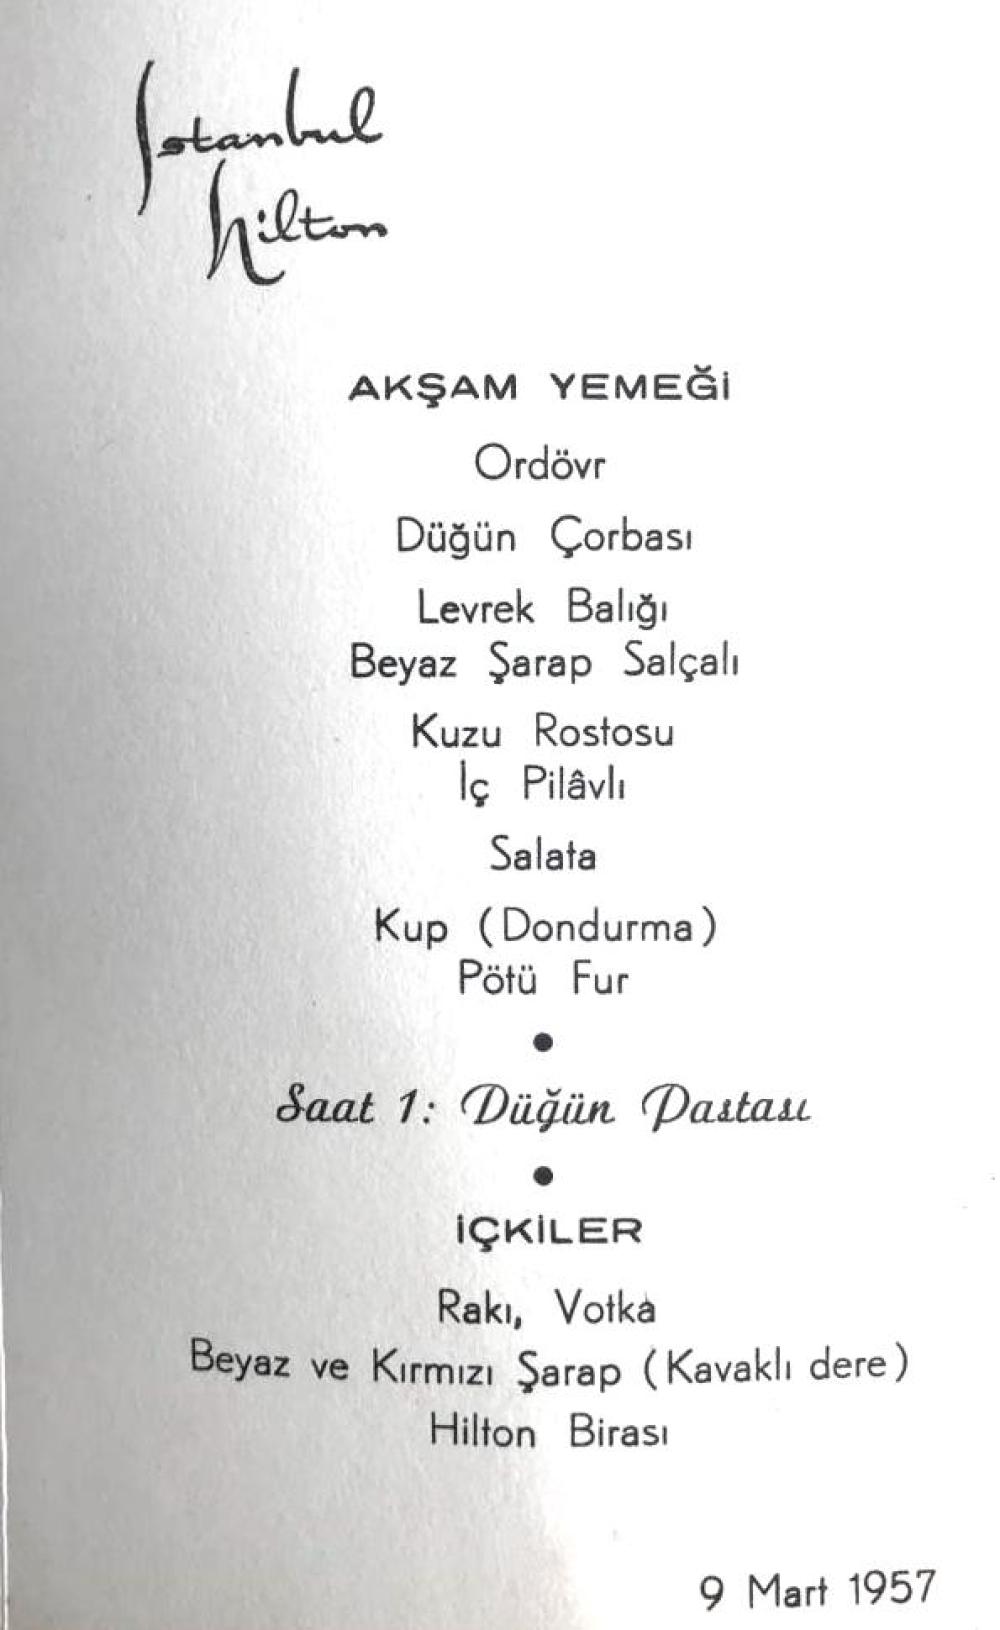 İstanbul Hilton Akşam Yemeği - Davetiye menü 1957